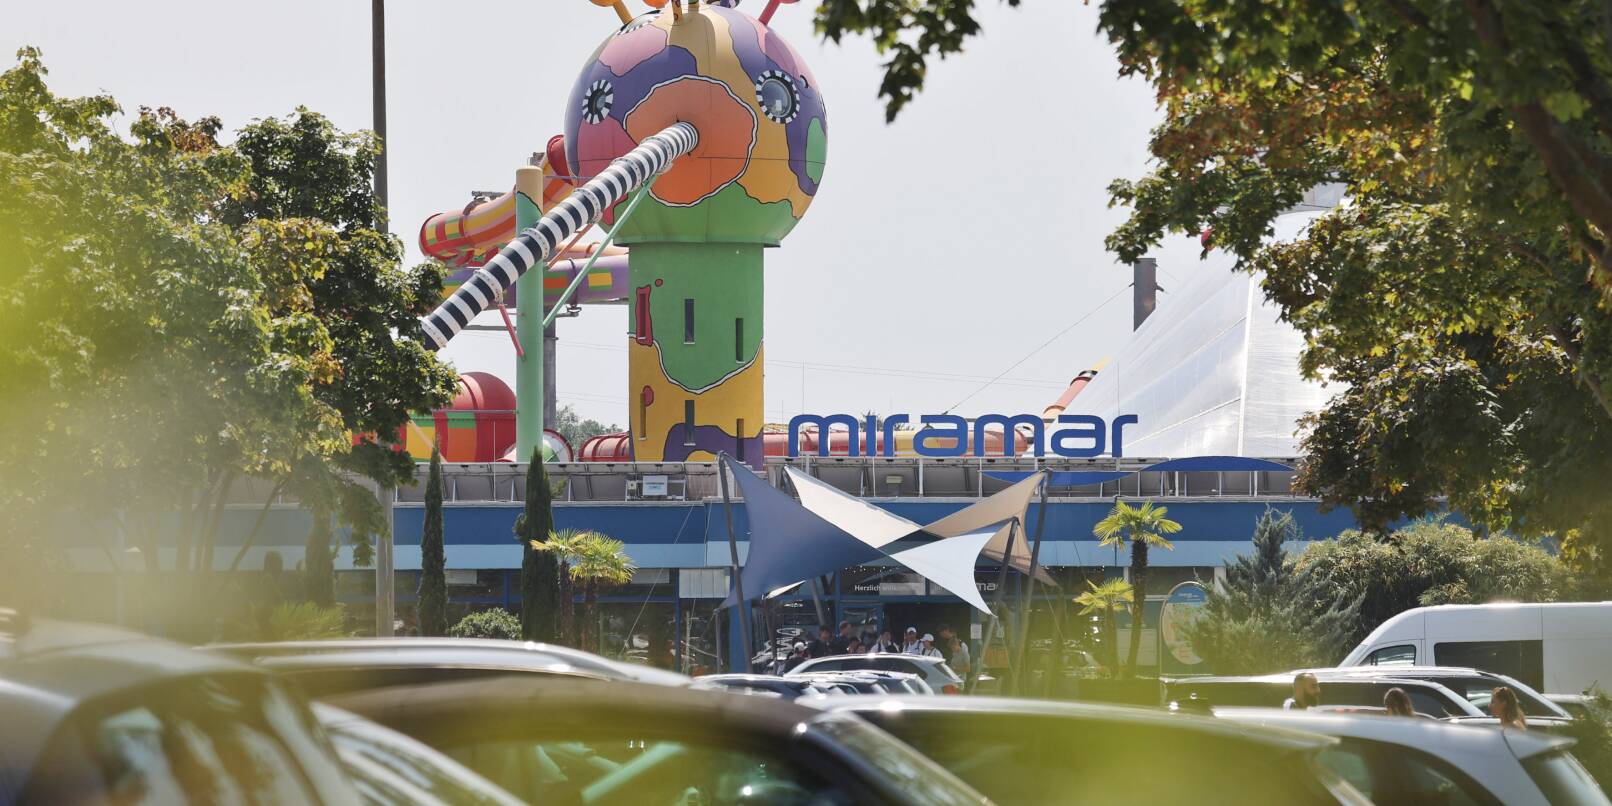 Das Freizeitbad Miramar in Weinheim lockt Jahr für Jahr mehr als eine halbe Million Besucher aus einem Umkreis von 100 Kilometern und mehr an. Entsprechend groß ist die Nachfrage nach Parkplätzen (Archivbild)